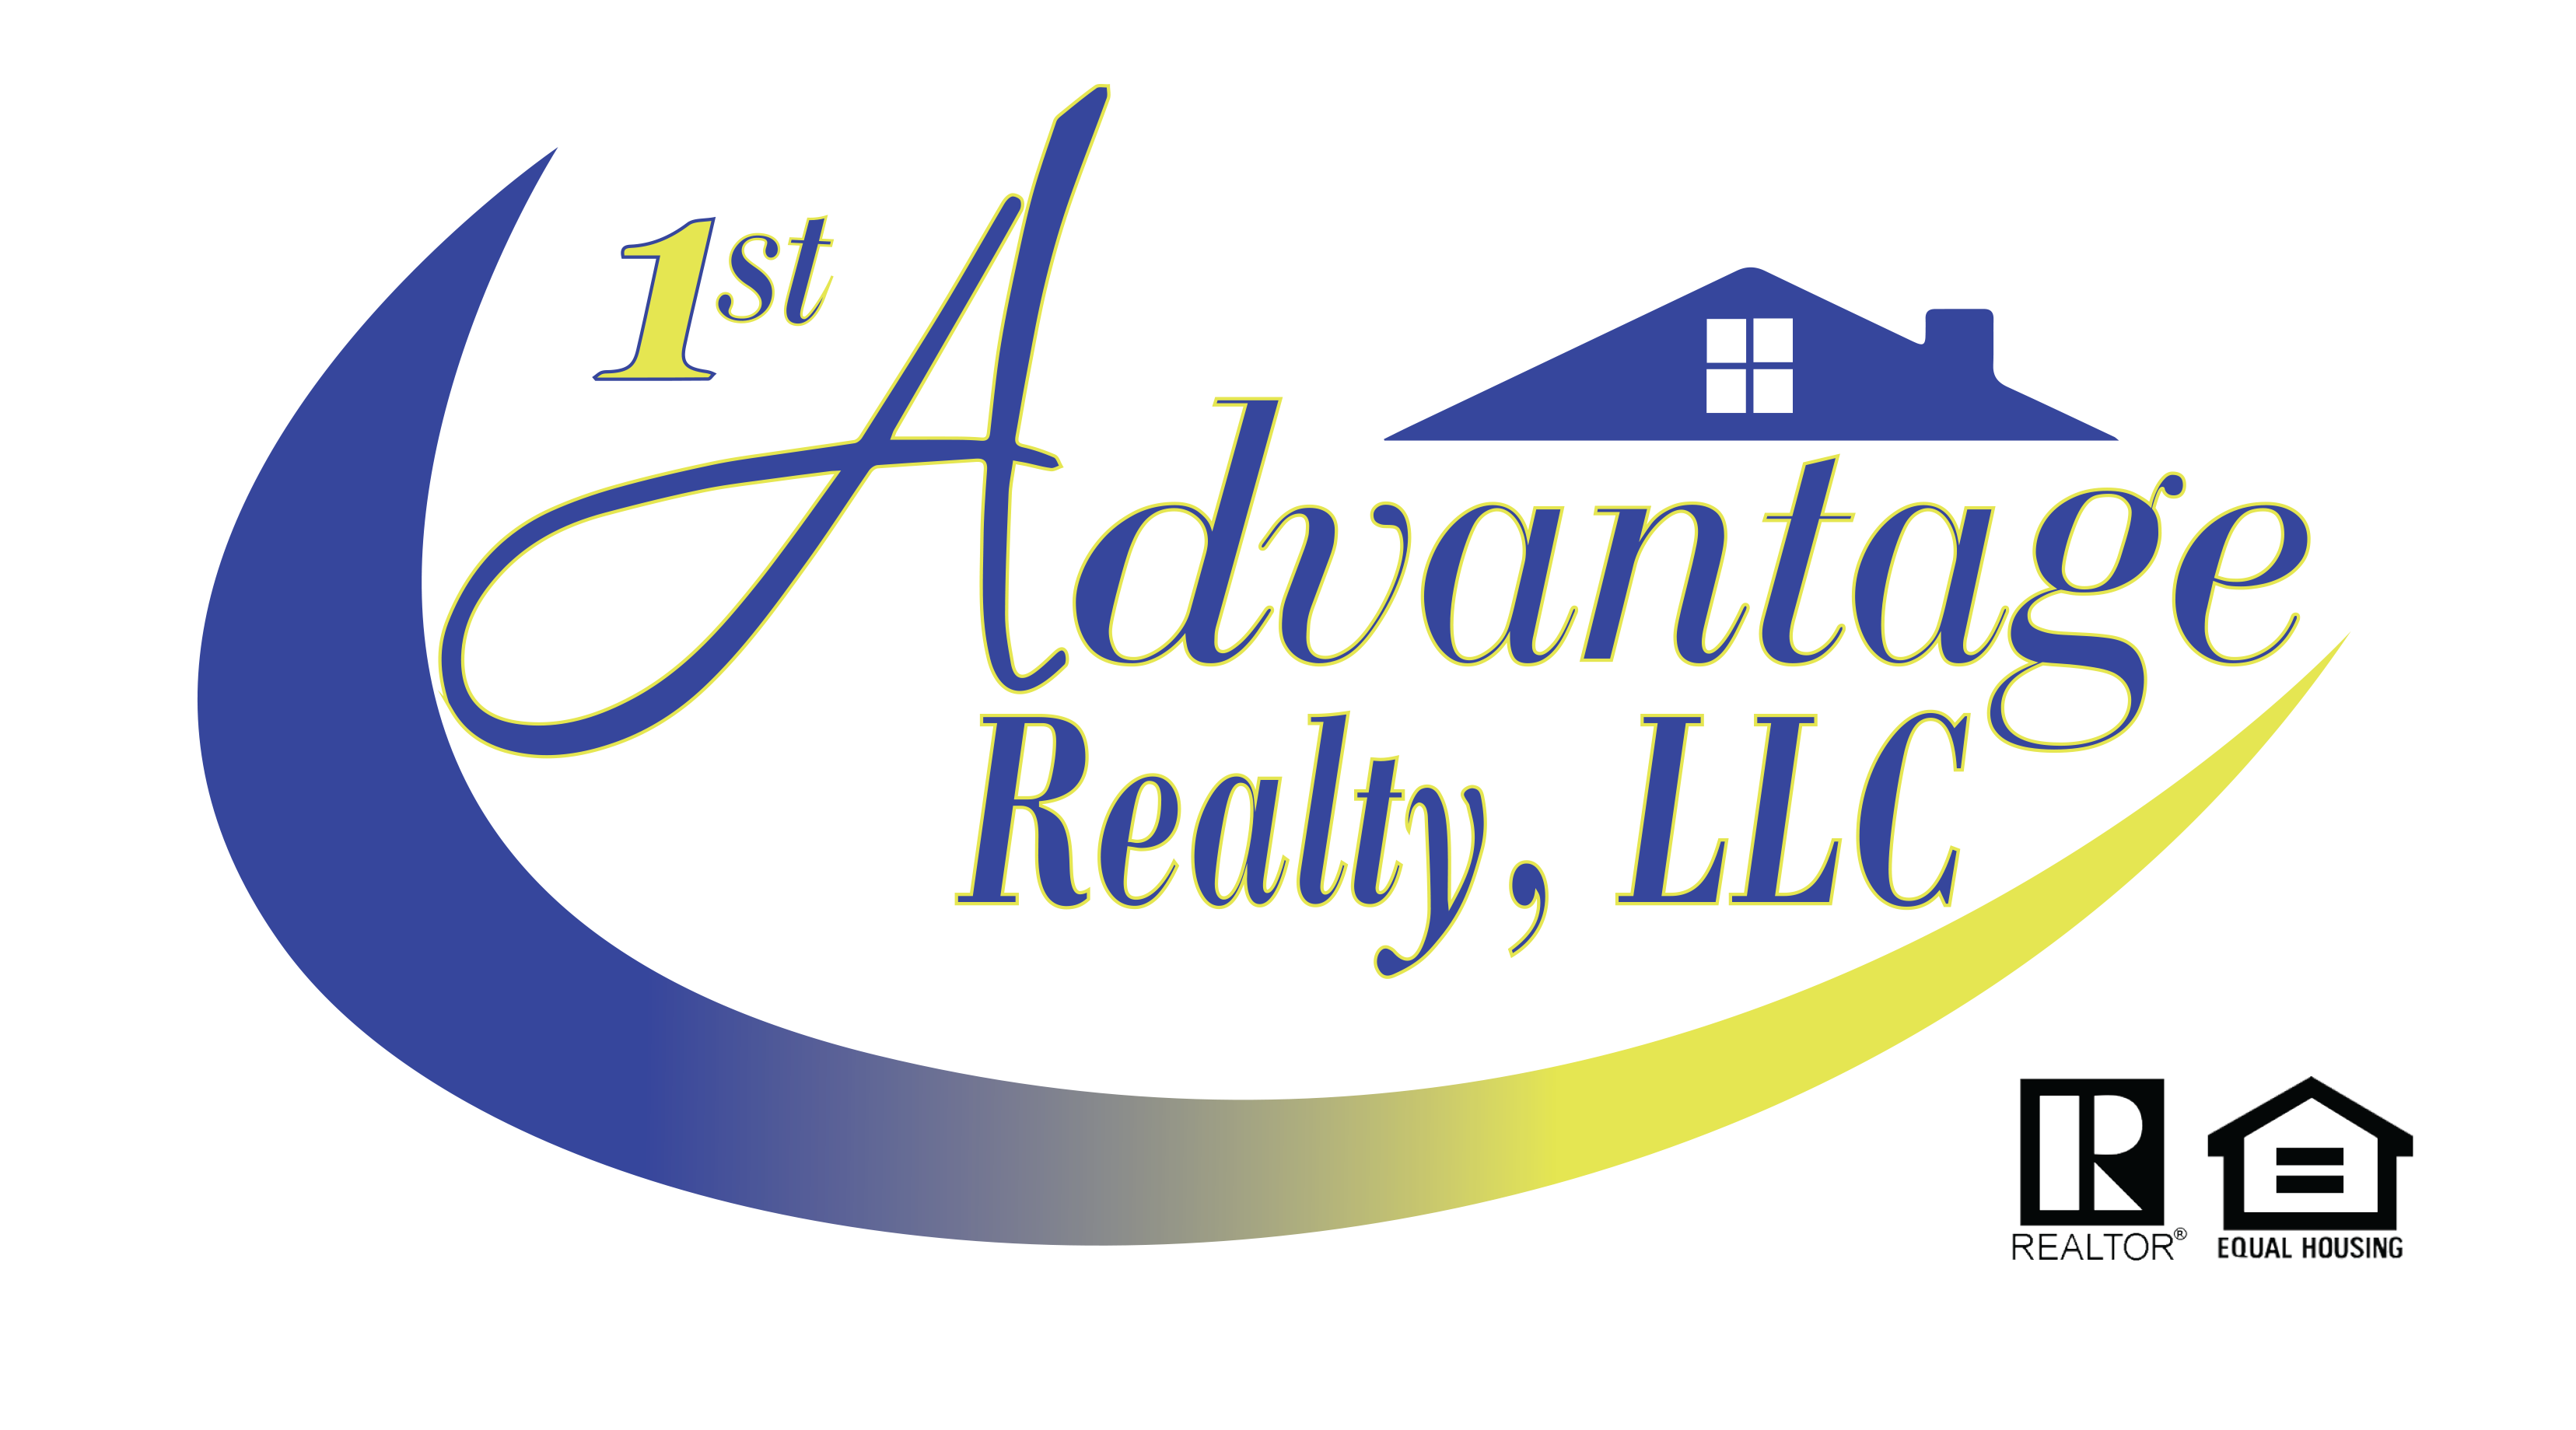 1st Advantage Realty, LLC